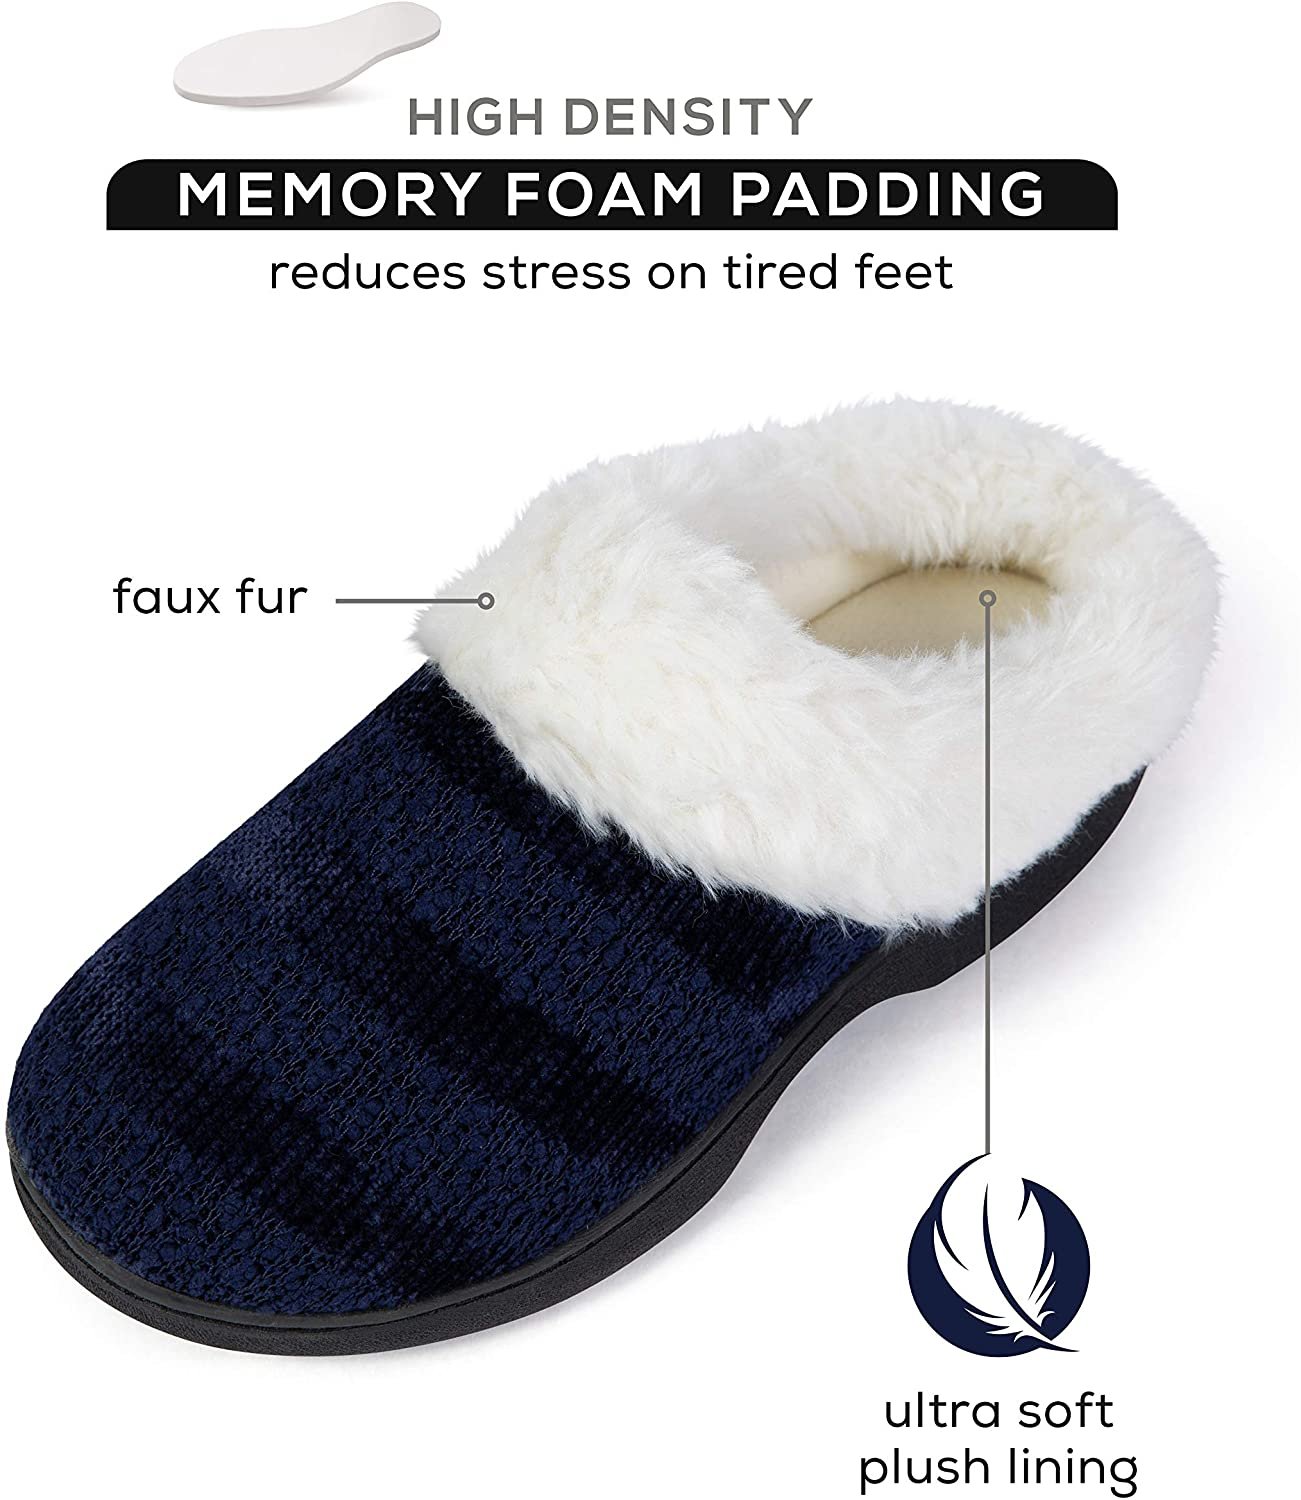 Roxoni Women’s Cozy Memory Foam Slippers, Warm Faux Fur, Indoor Outdoor Rubber Sole